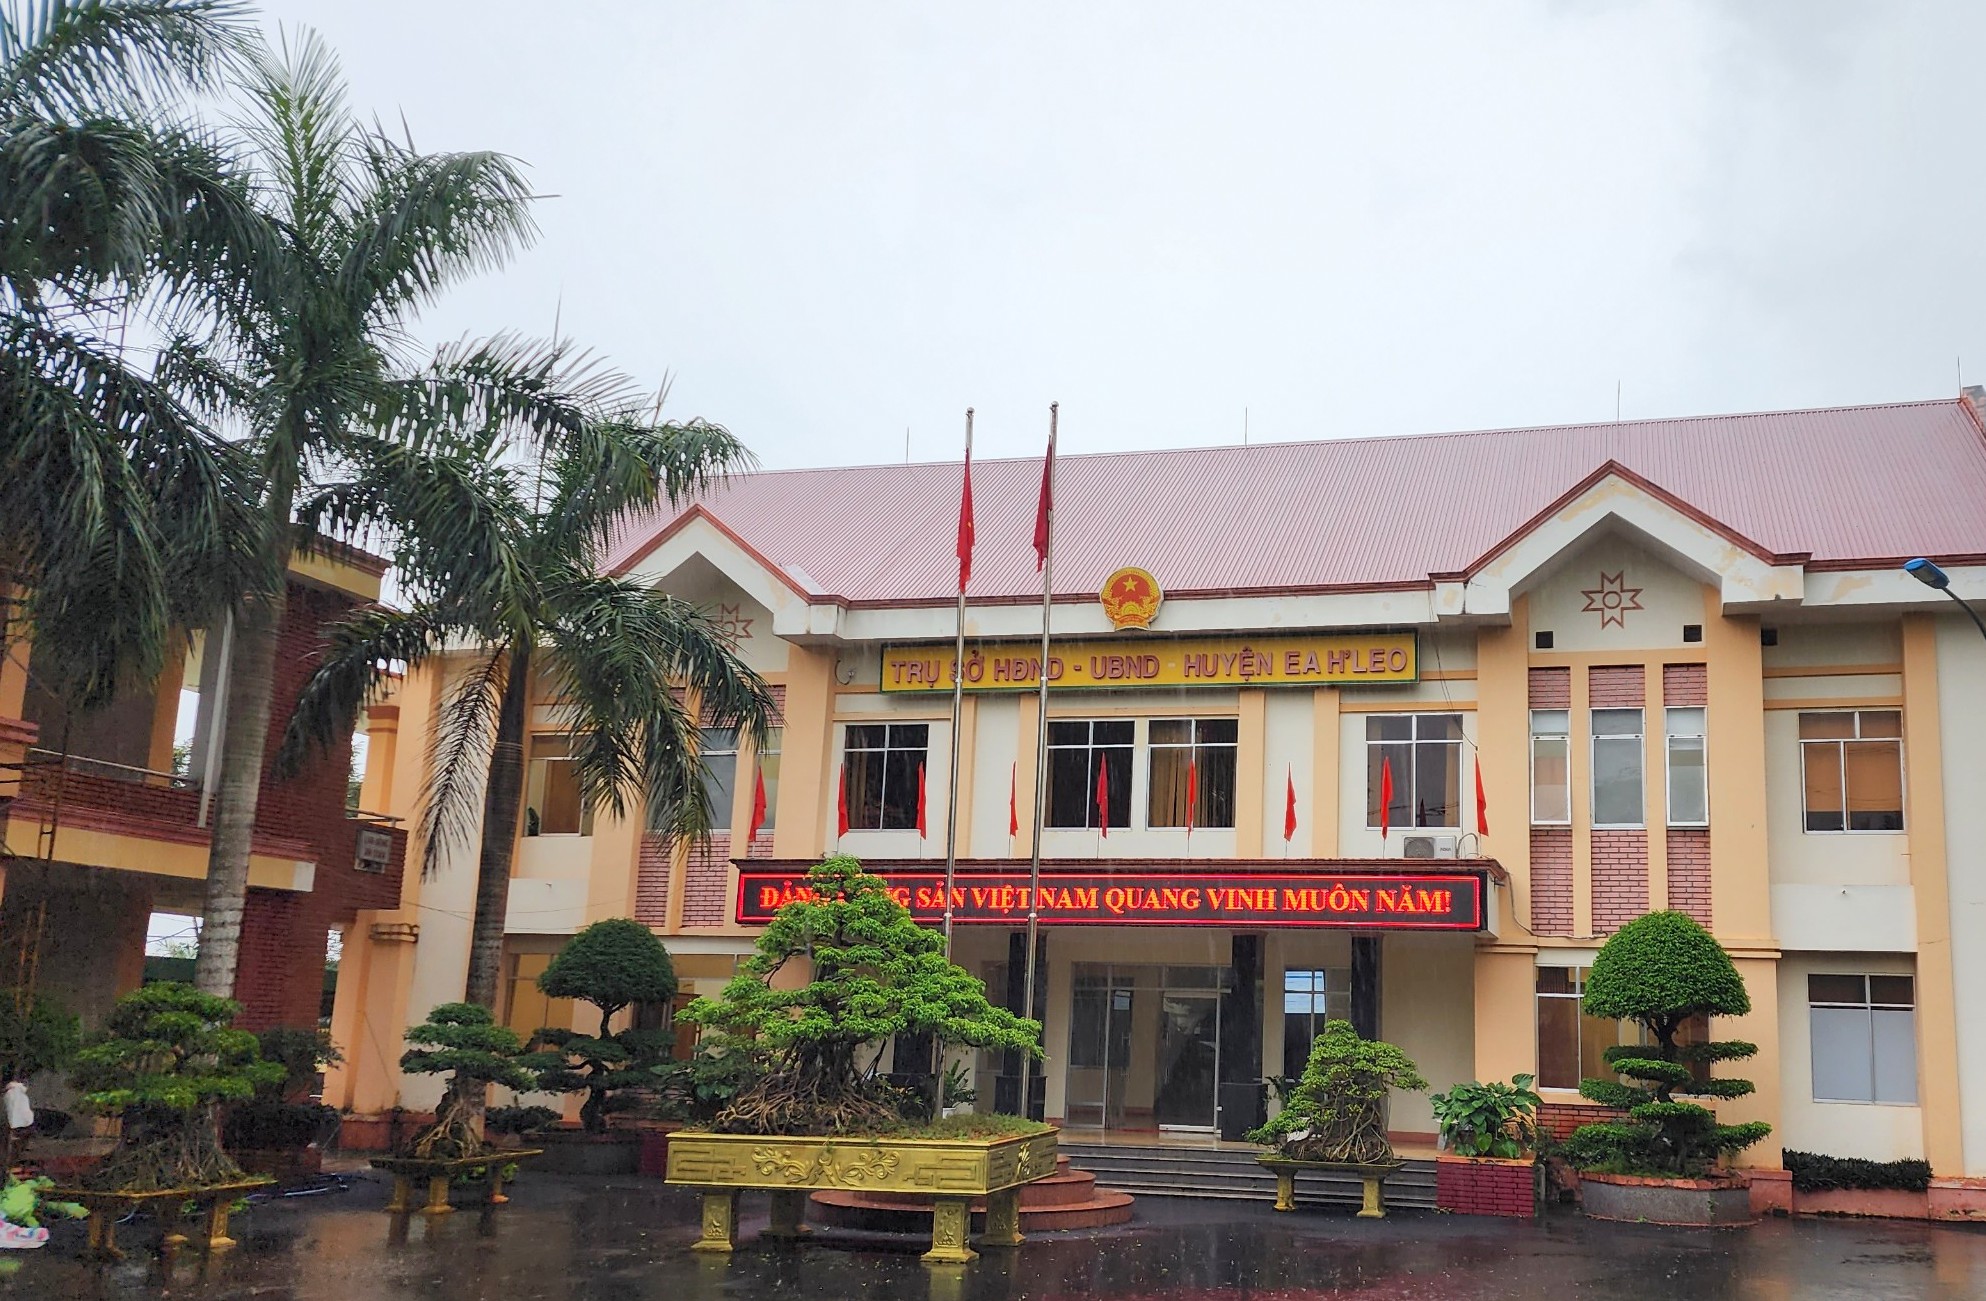 Lãnh đạo UBND huyện ở Đắk Lắk sẽ công khai xin lỗi giáo viên